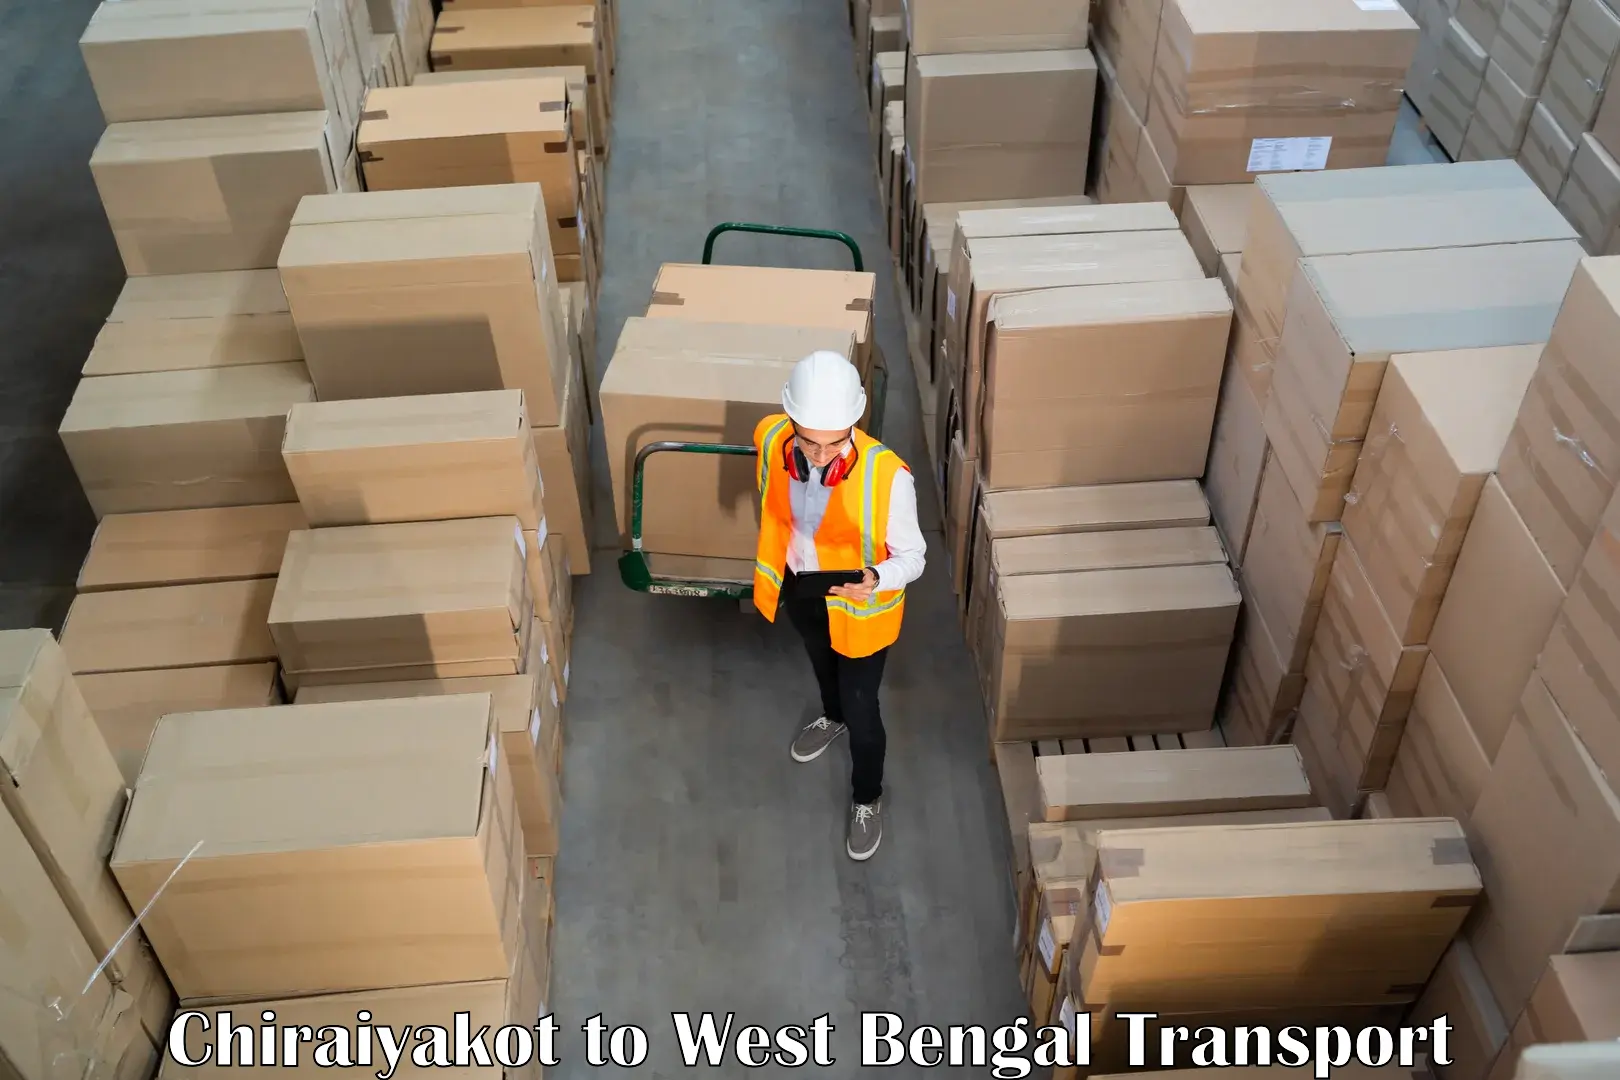 Container transport service Chiraiyakot to Chhatna